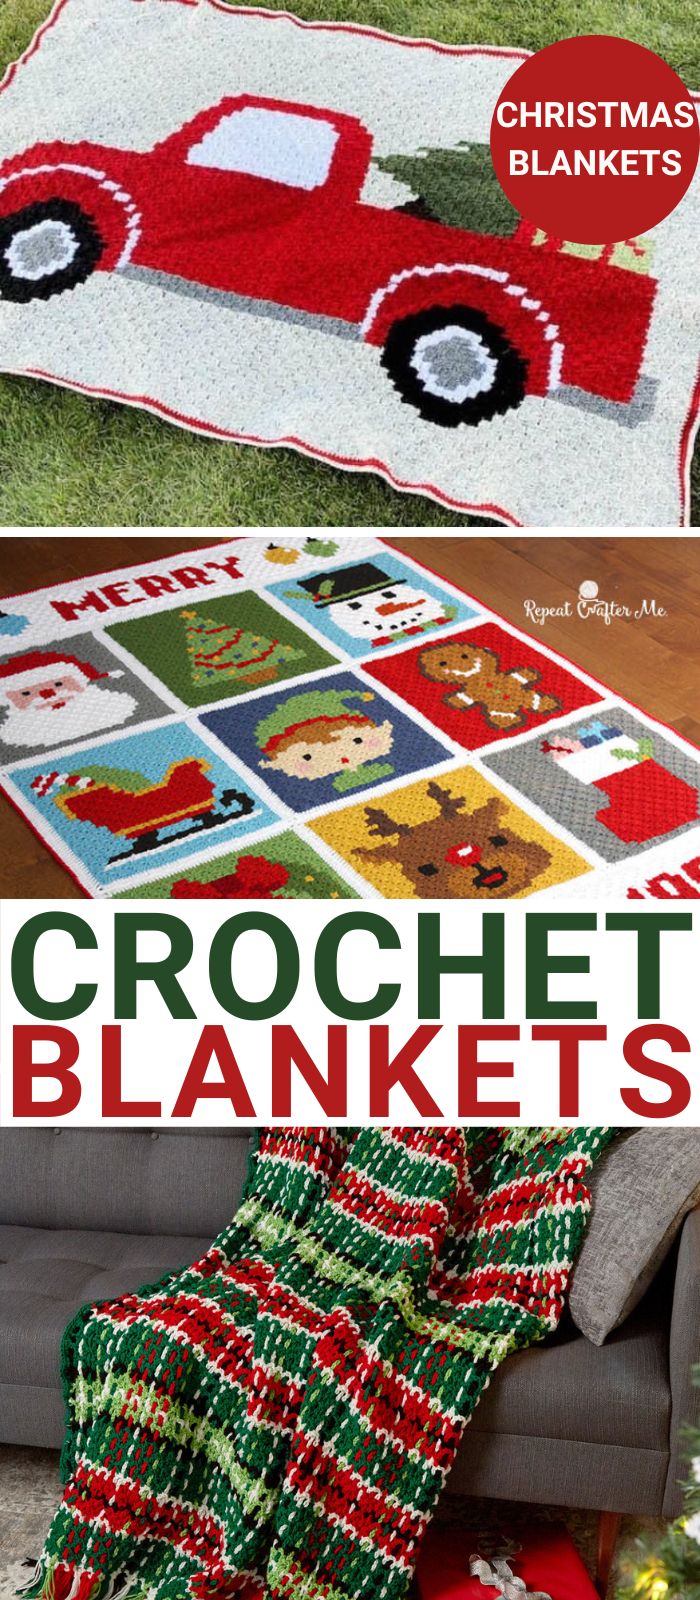 crochet blanket patterns for Christmas 